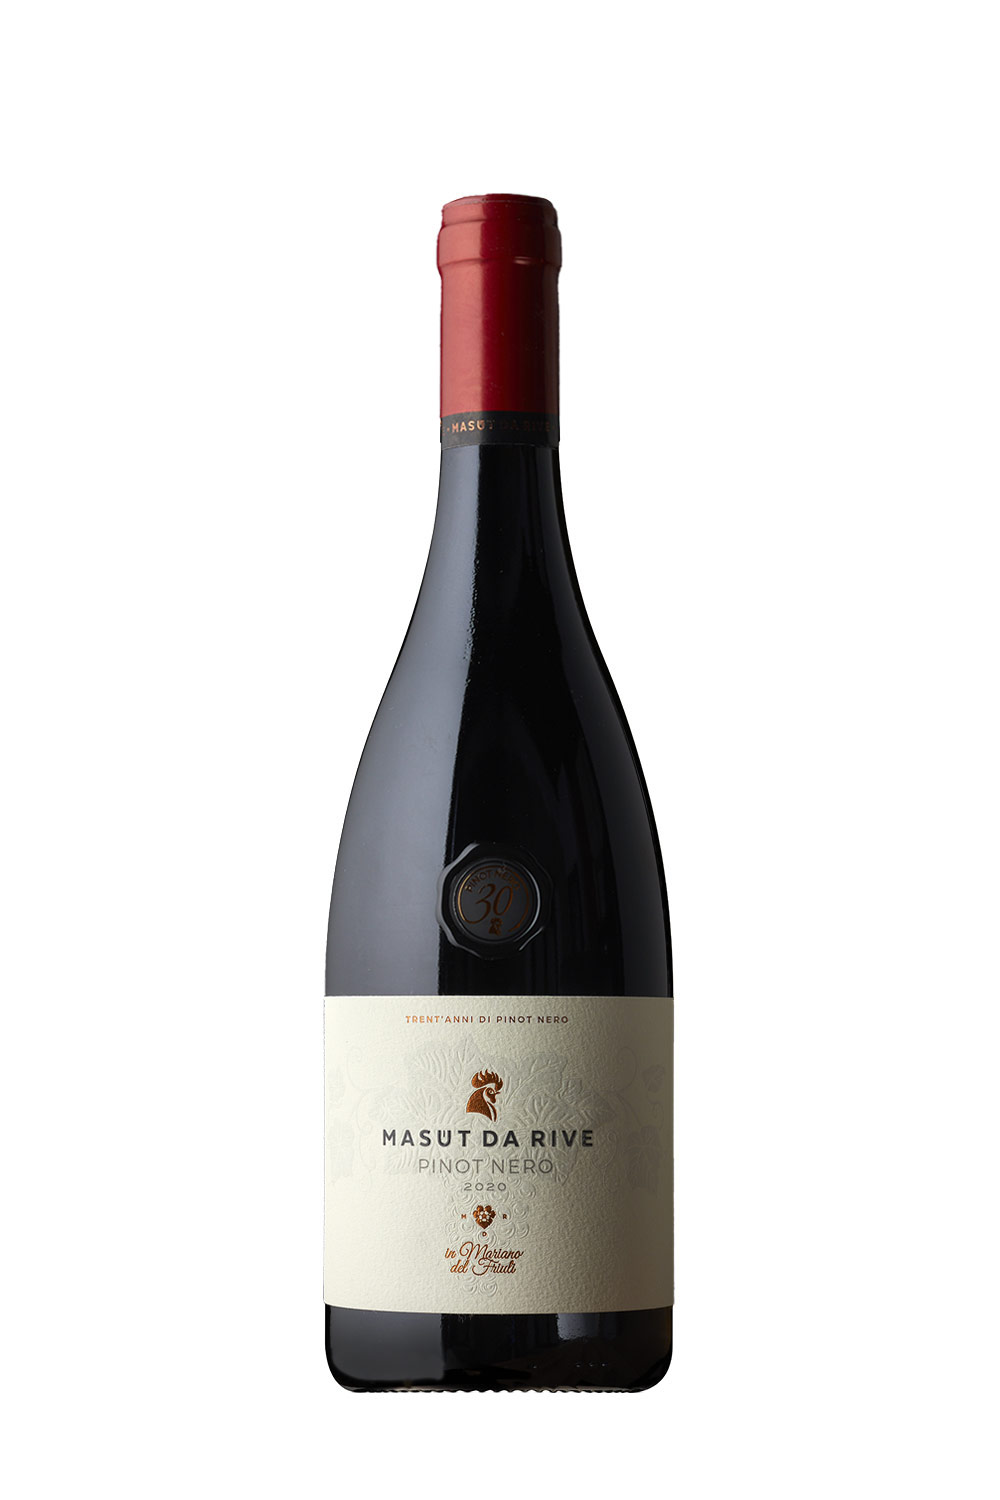 Masut da Rive Pinot Nero 30 Jahre DOC 2020 | Online kaufen bei Senti Vini -  Weine aus Italien